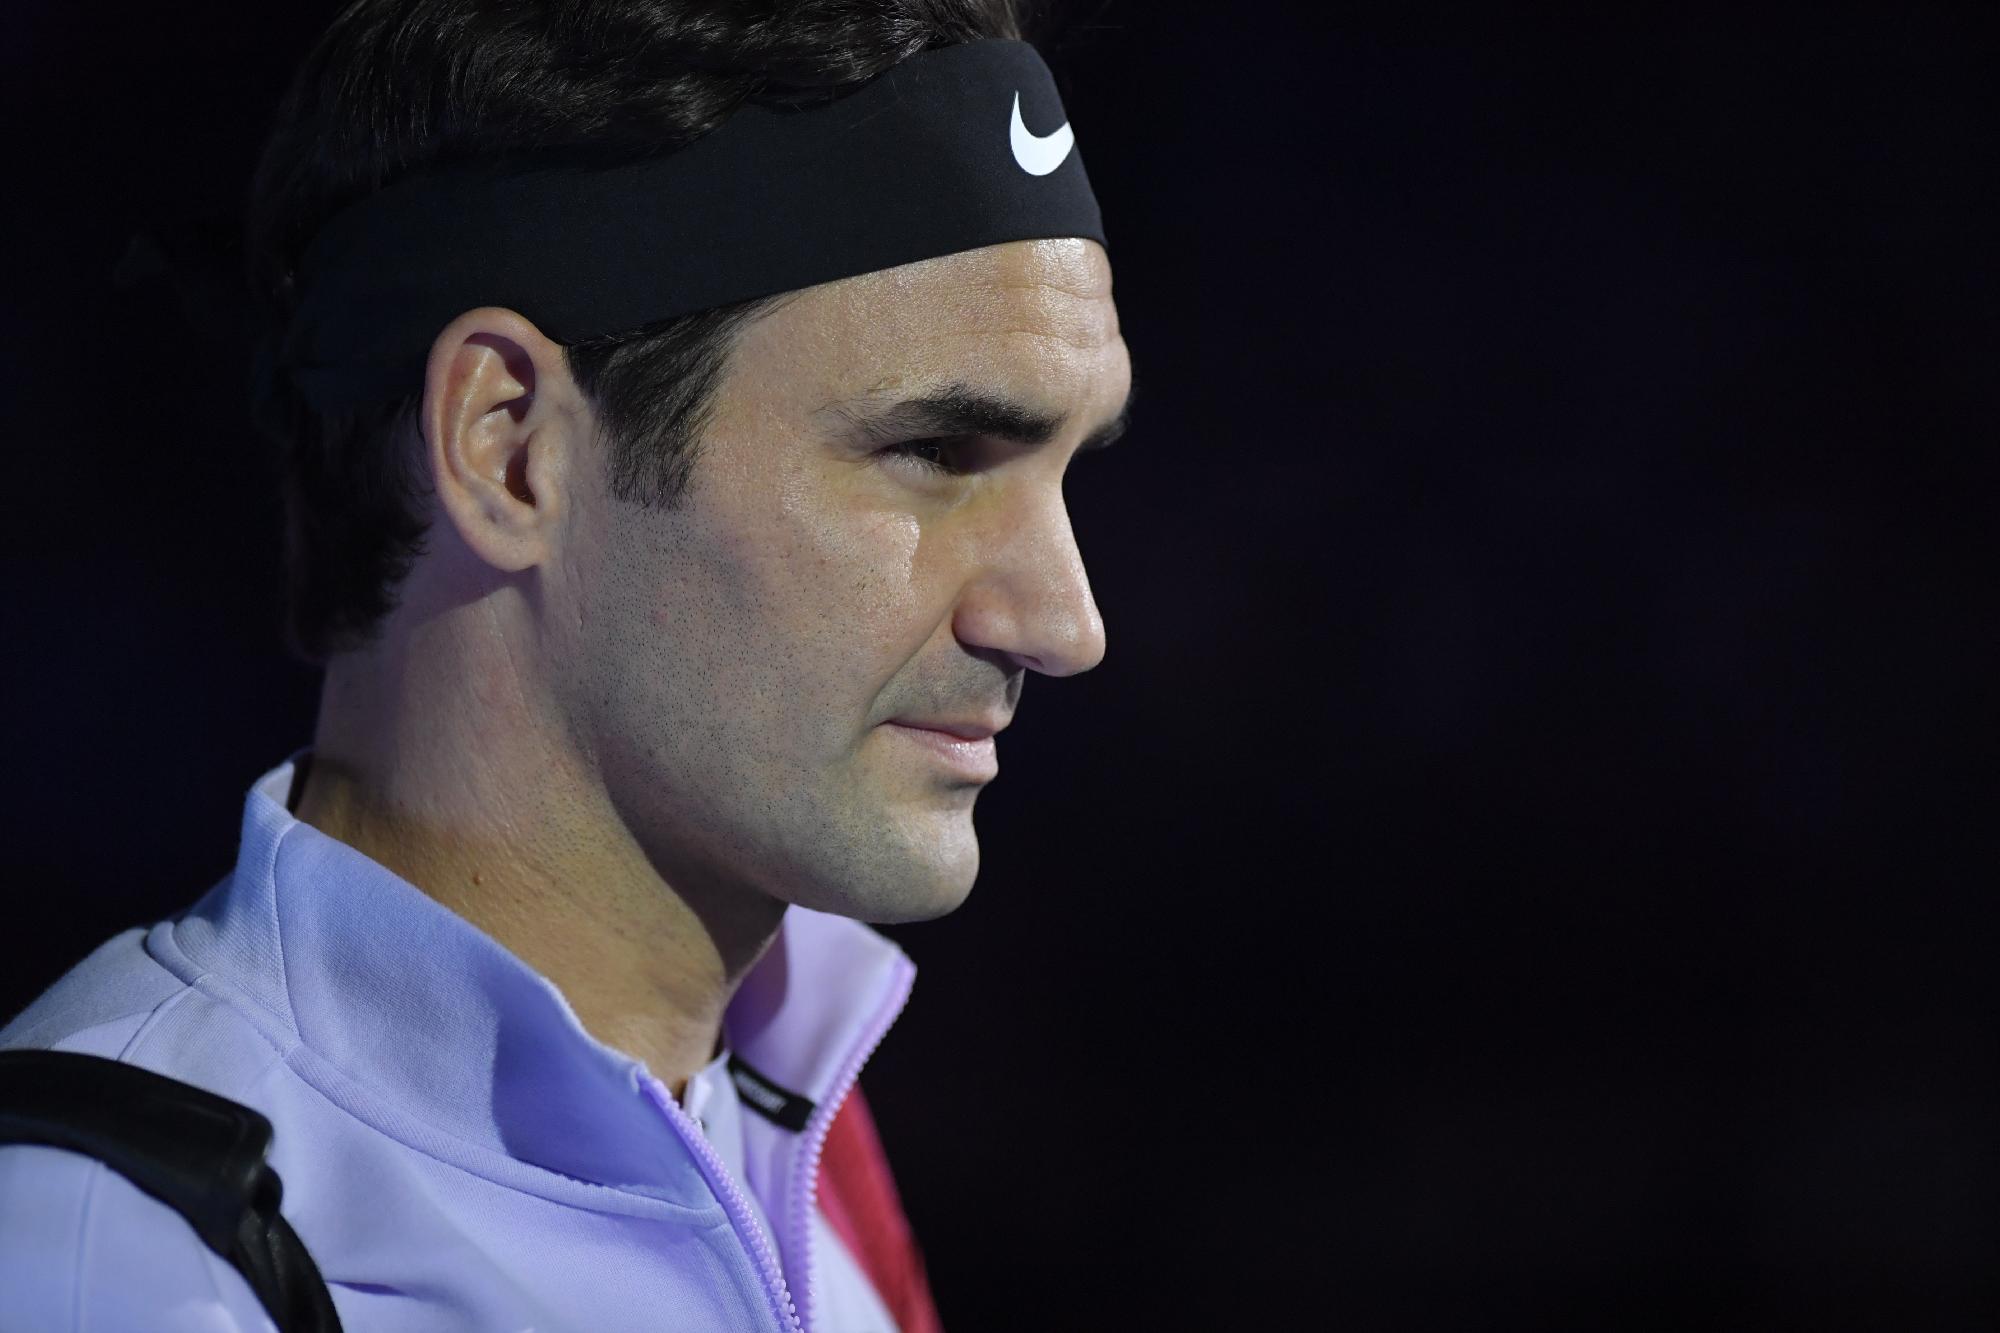 Edzője szerint Federer szakkommentátorként és mentorként folytathatja